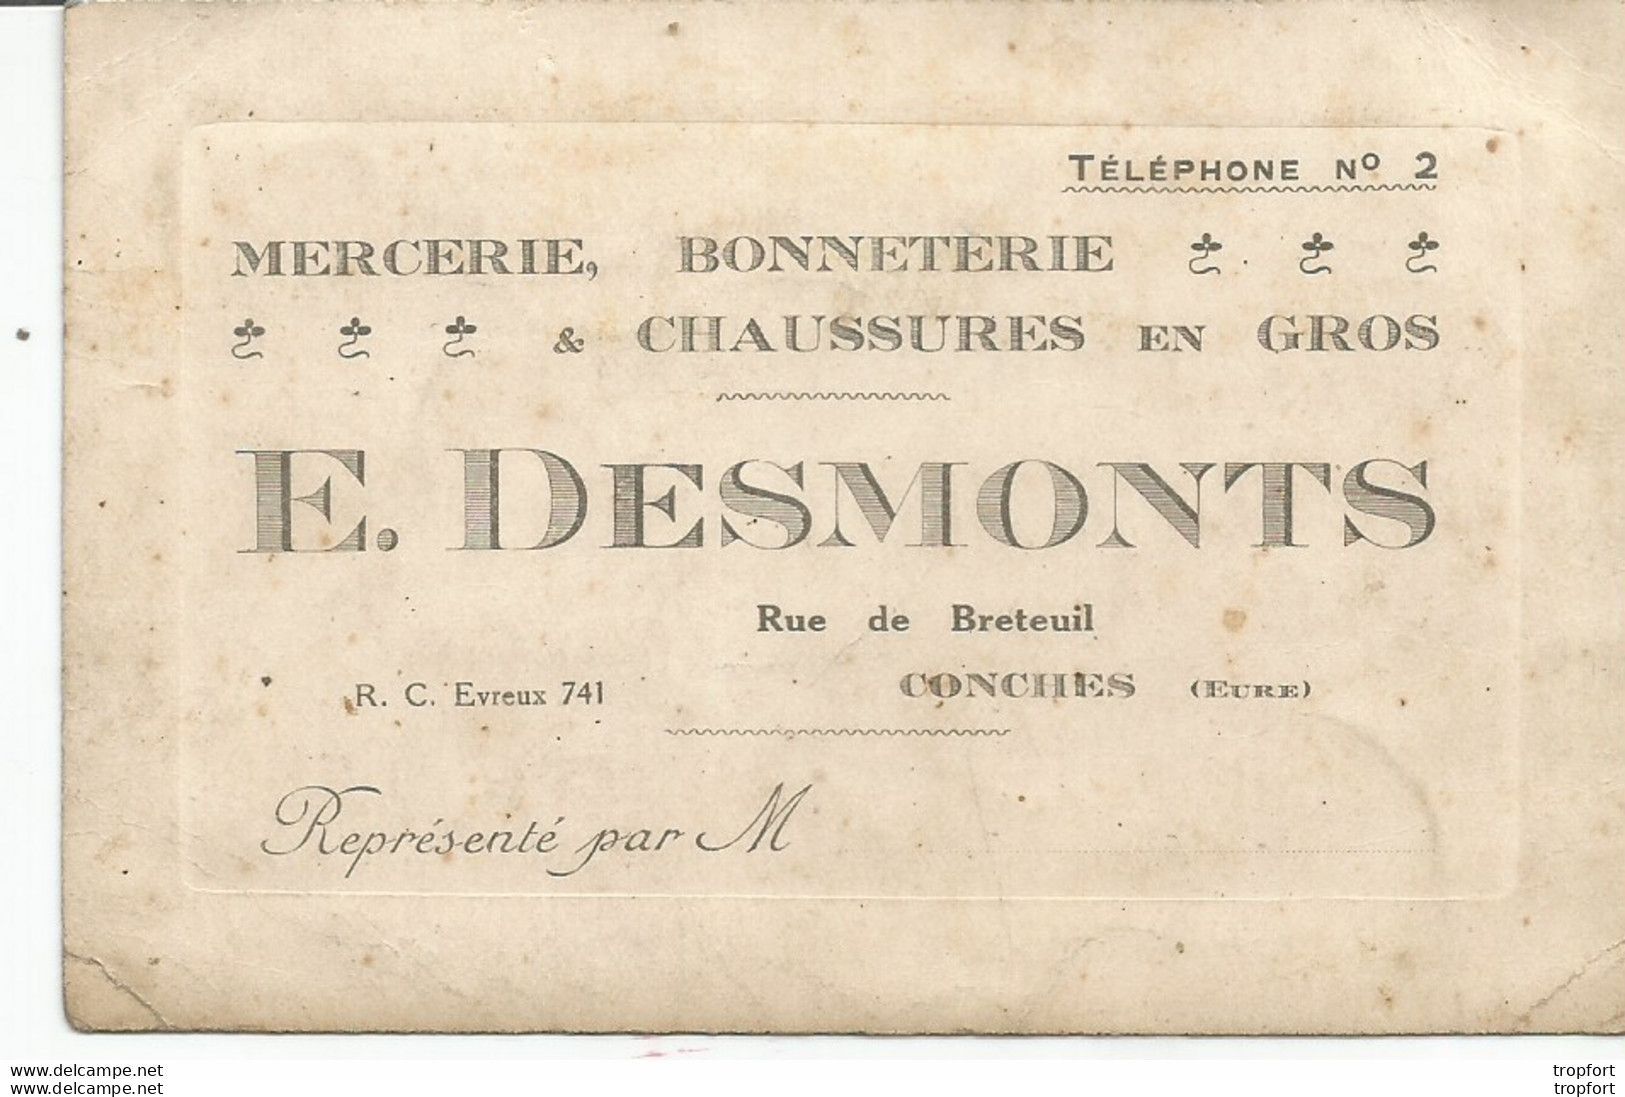 AS / Ancienne Carte De Visite PUBLICITAIRE PUB E.DESMONTS Chaussure CONCHES (eure) Rue De Breteuil MERCERIE BONNETERIE - Visitenkarten